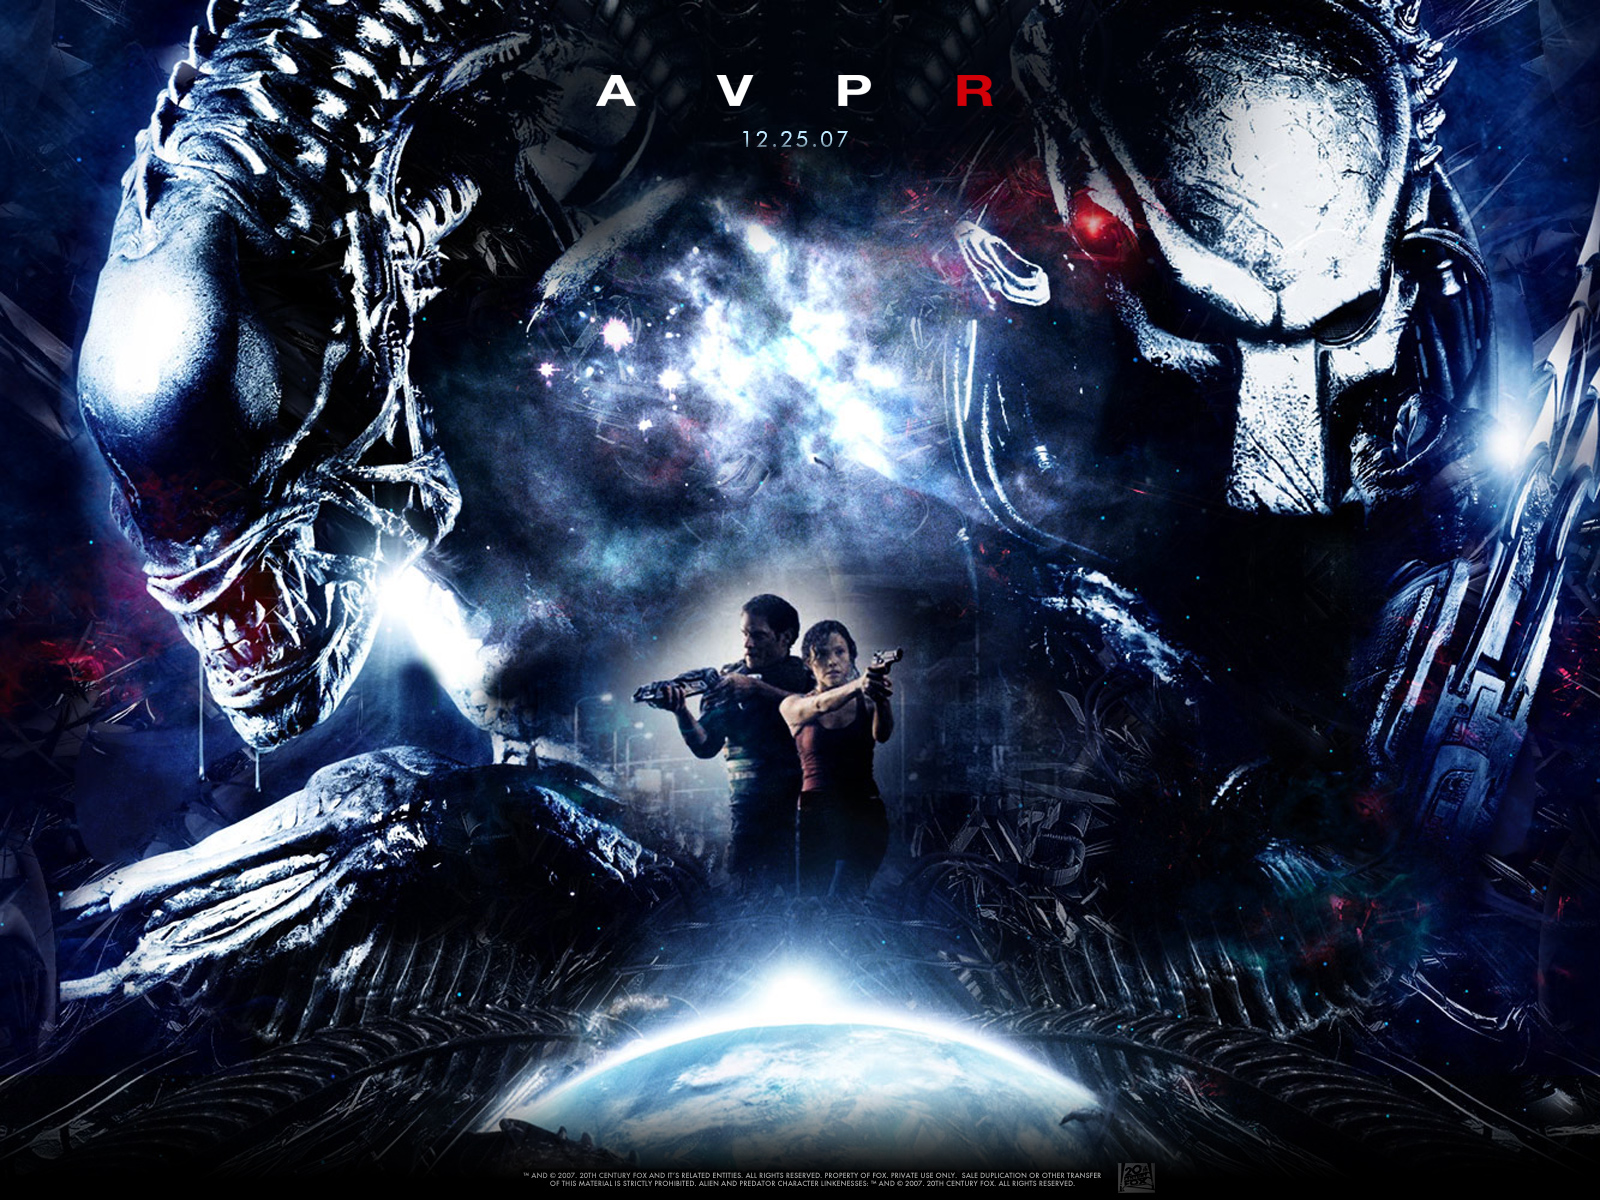 AVP: Alien Vs. Predator Backgrounds on Wallpapers Vista